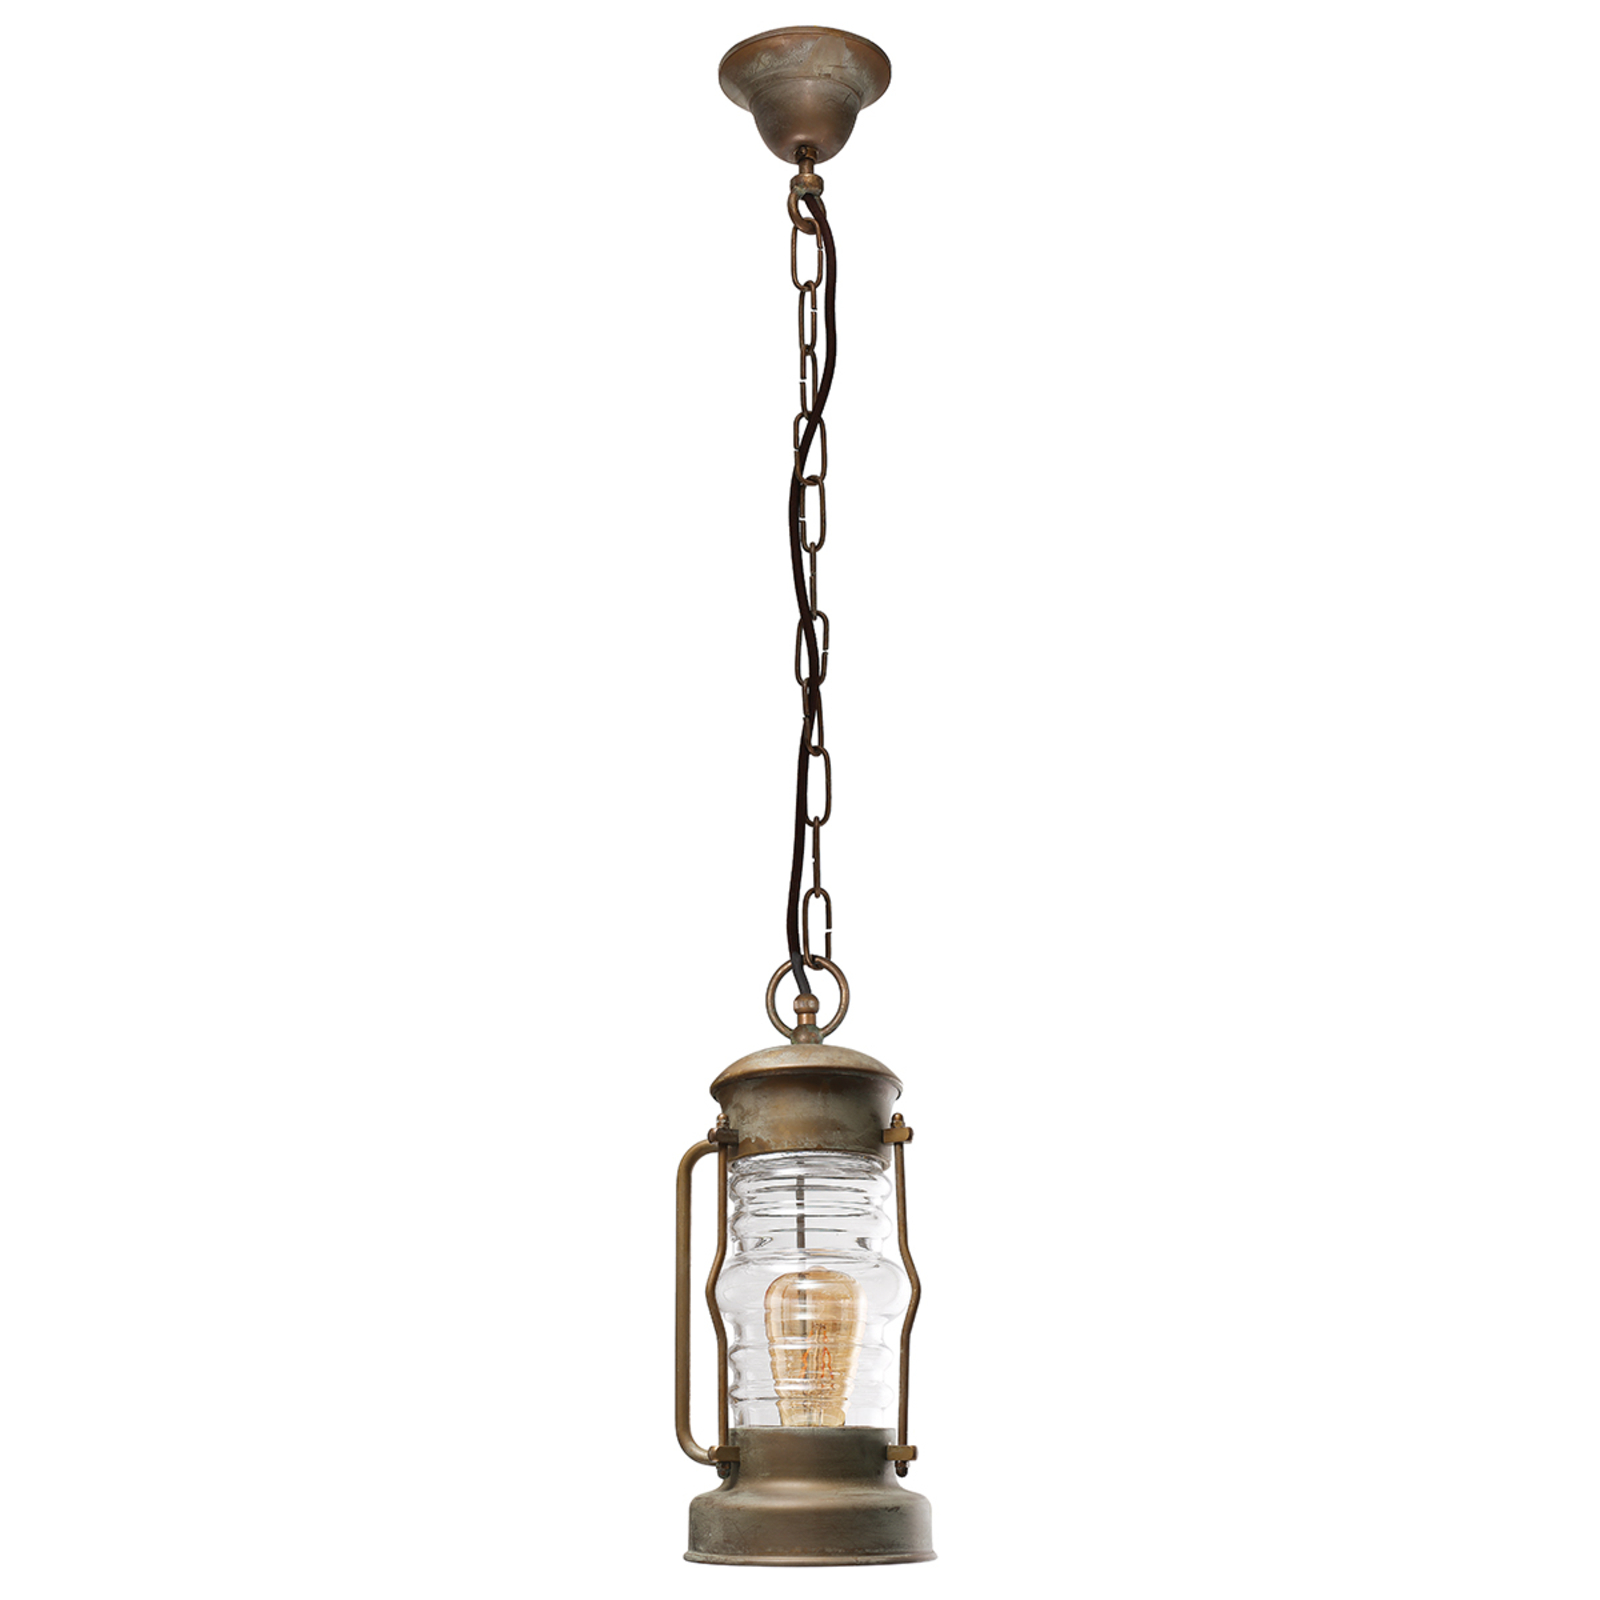 Antiko hanglamp in lantaarnvorm, zeewaterbestendig